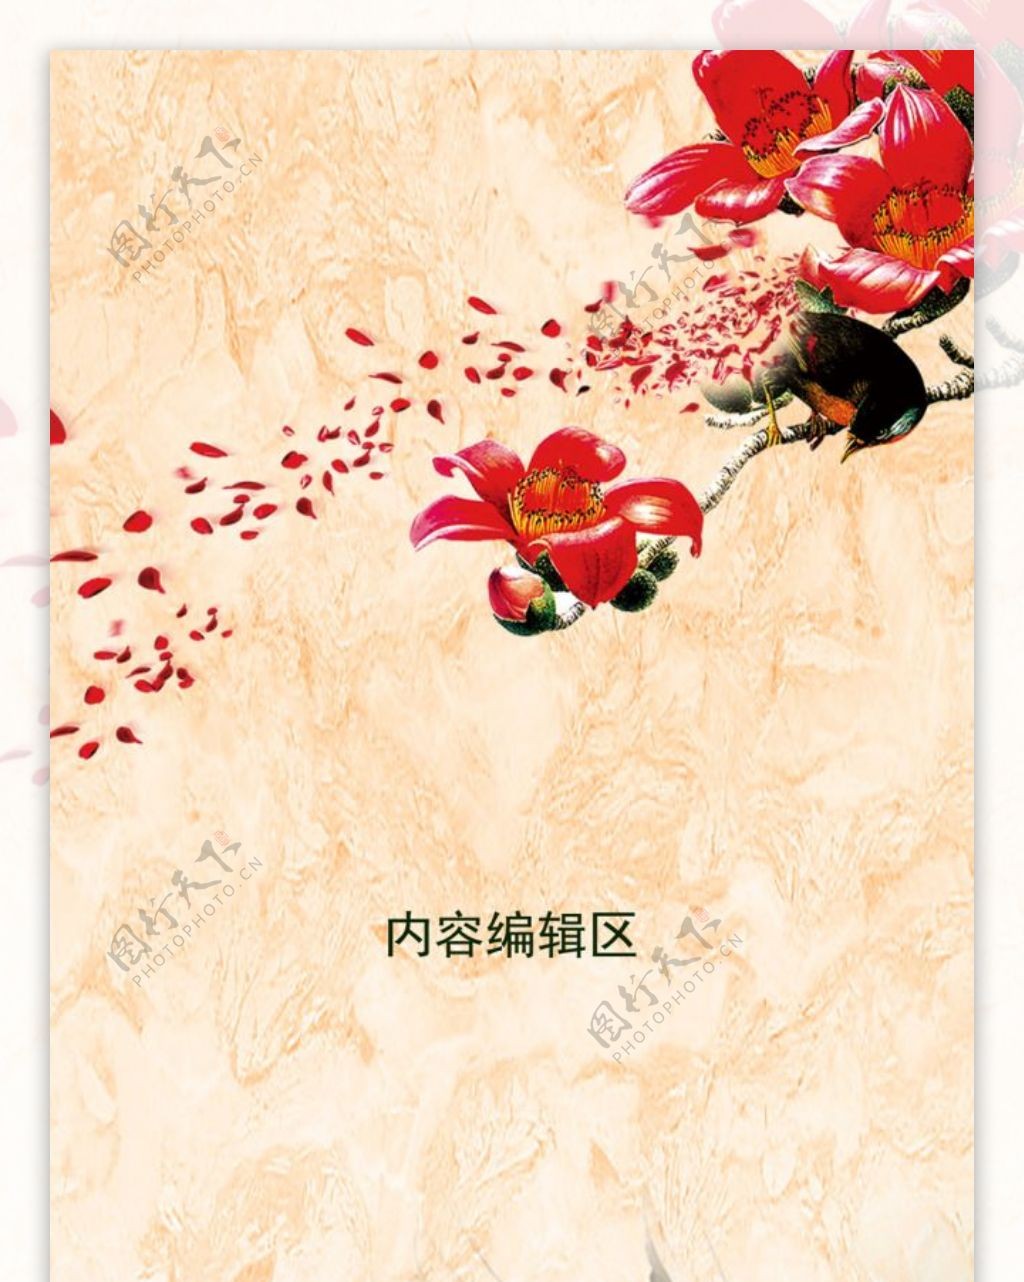 精美中国古风展架背景模板设计素材画面设计